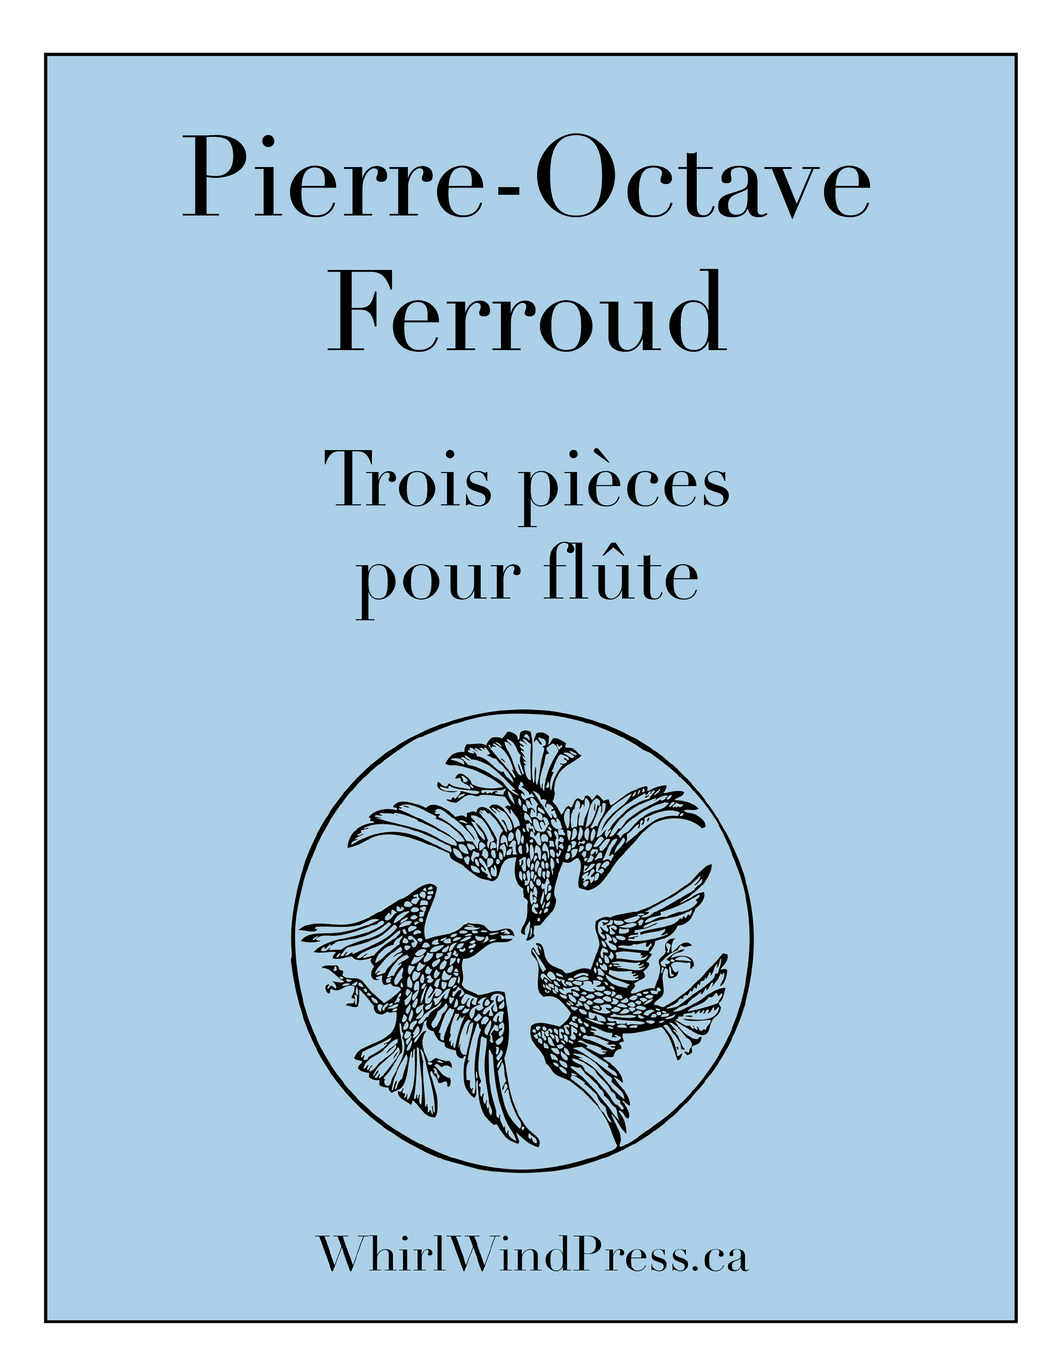 Pierre-Octave Ferroud - Trois Pieces pour flute